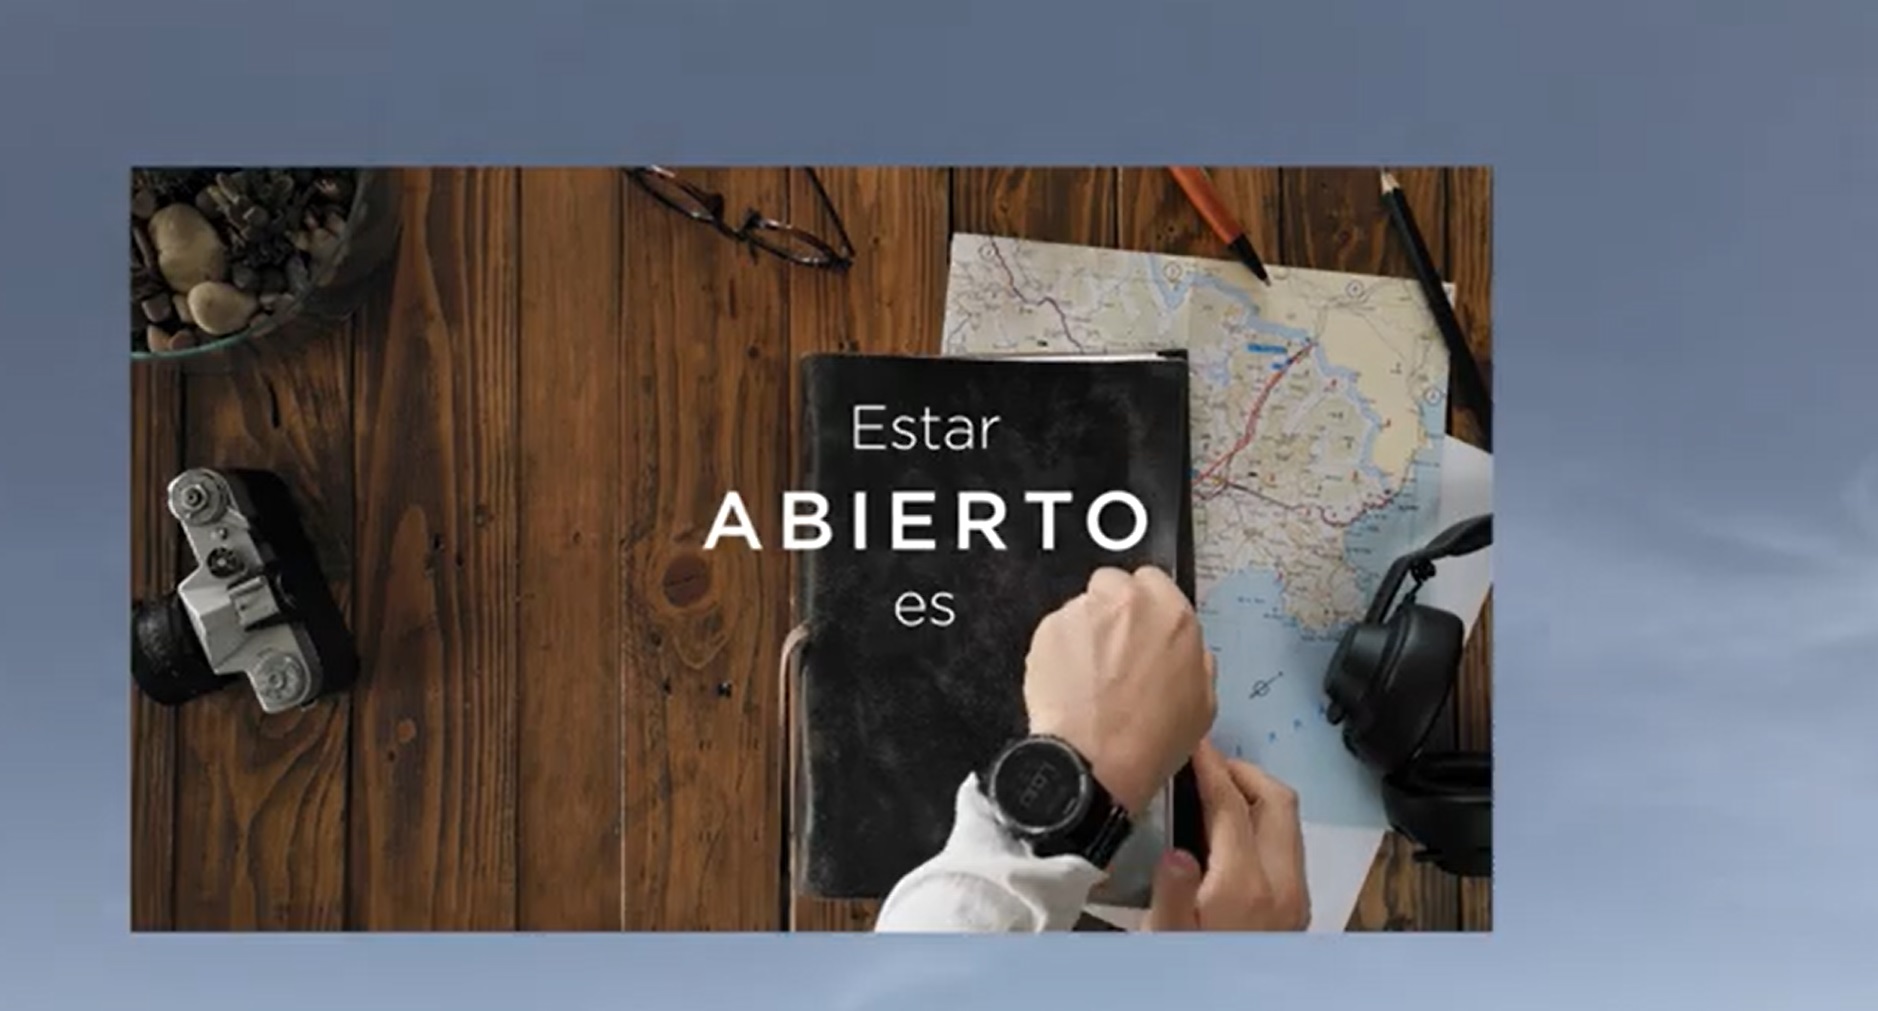 Antena 3 , celebra , diversidad ,sociedad , campaña publicitaria , Abrirse es vivir ,#LaTeleAbierta programapublicidad